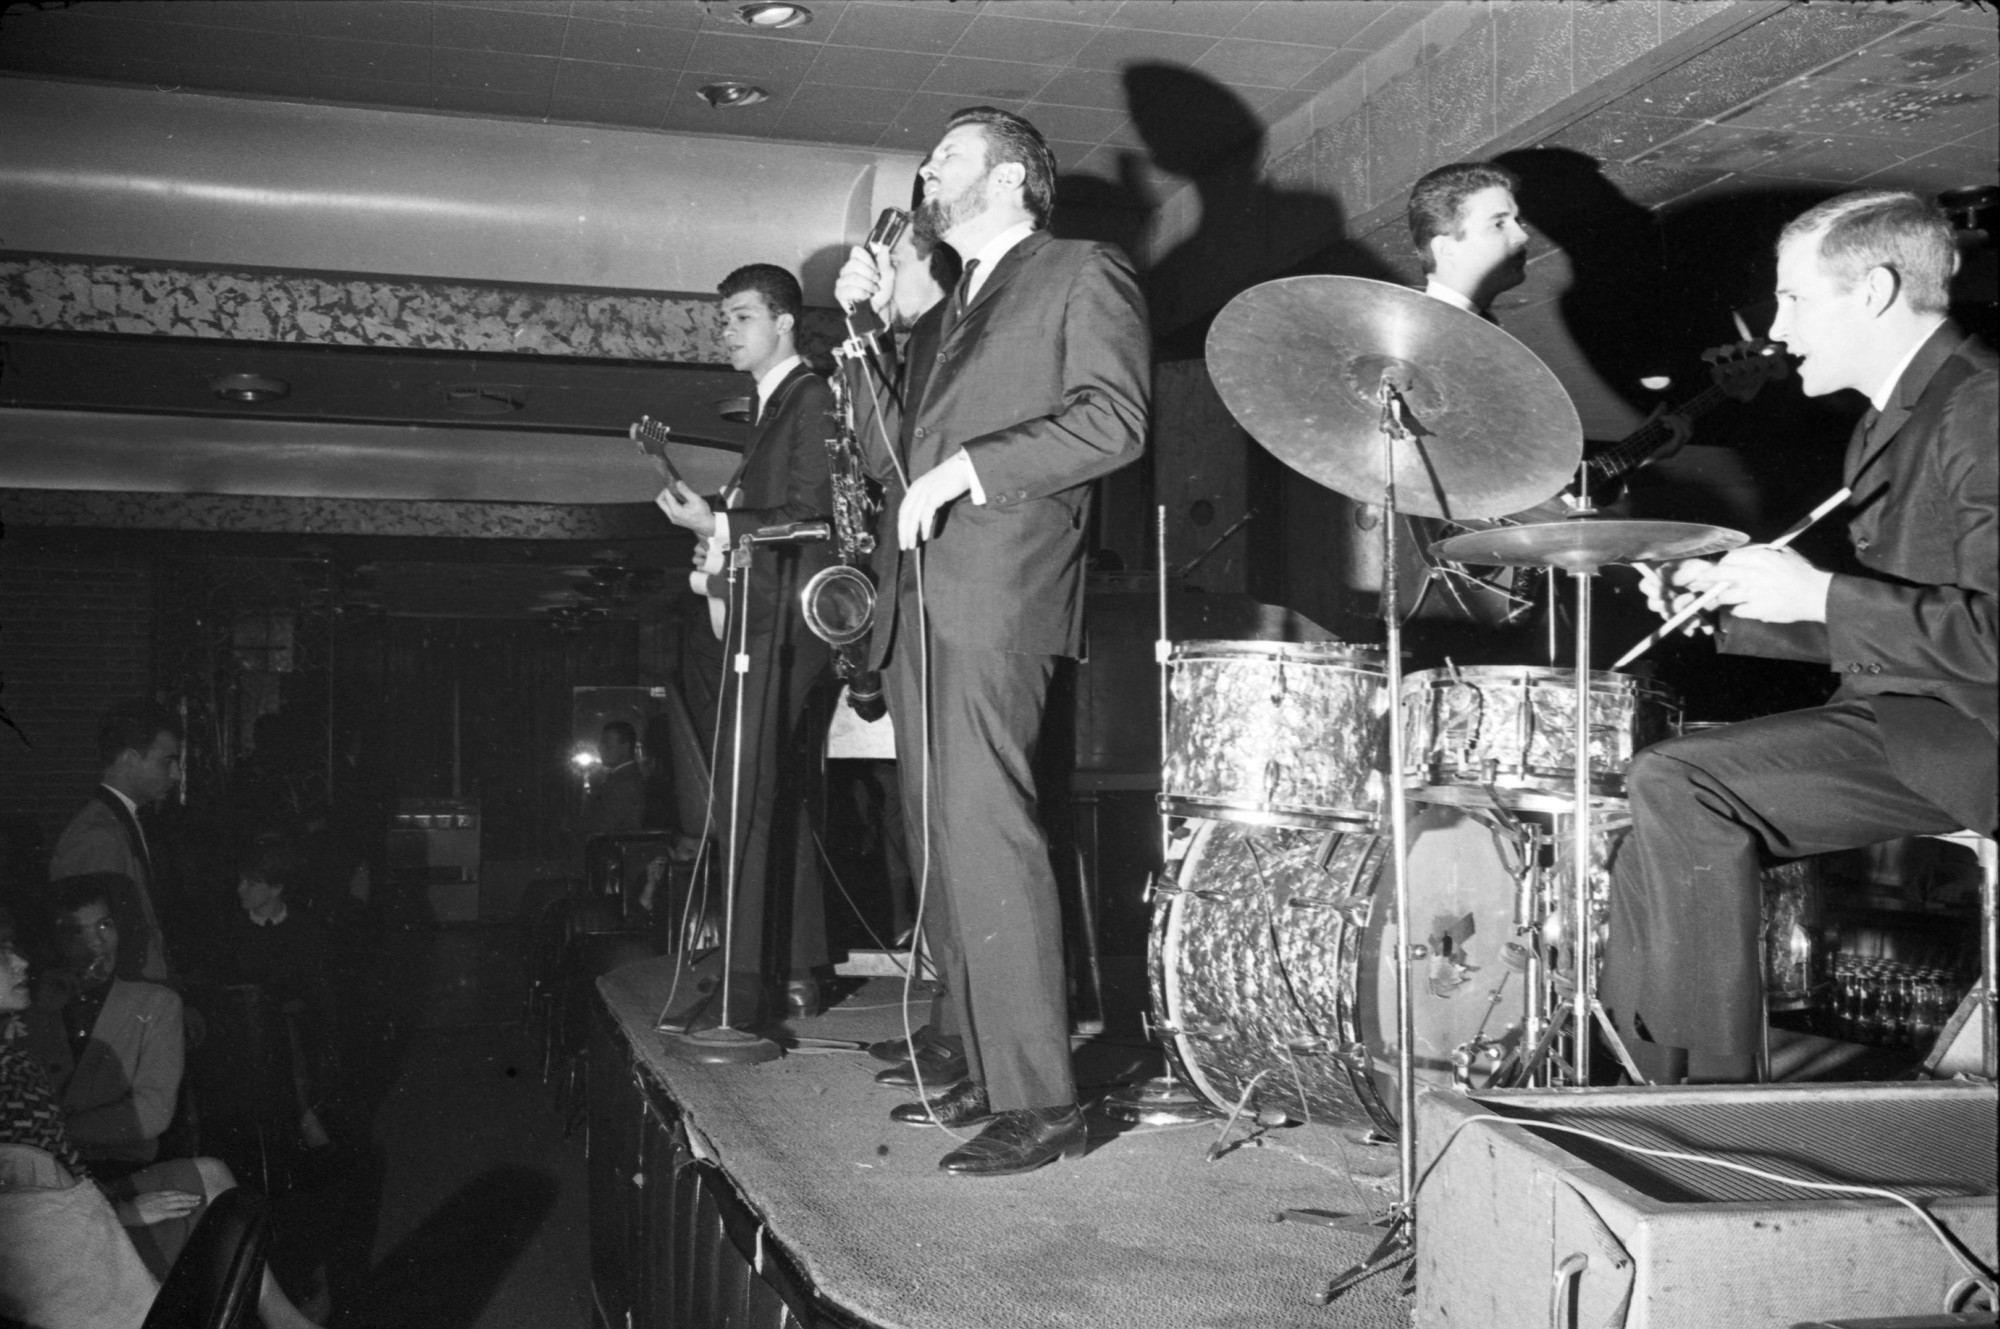 Cinq hommes en costume sur scène avec des instruments. On peut voir des spectateurs dans le coin inférieur gauche de l’image.